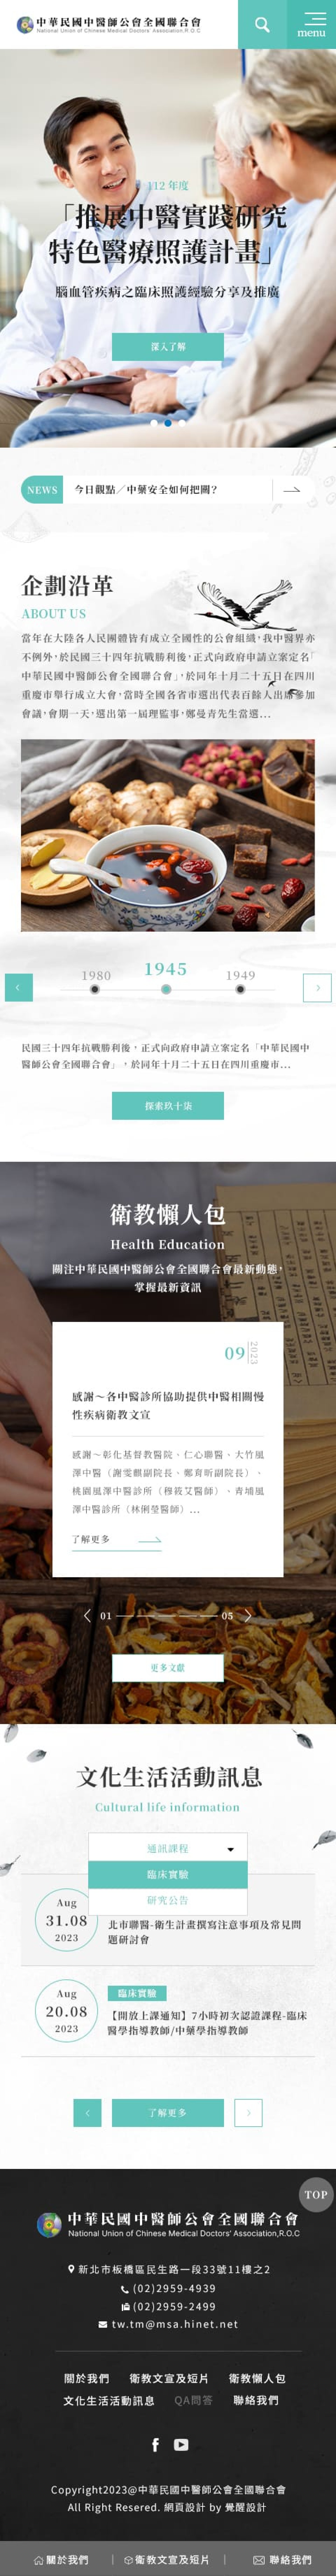 中醫藥安全諮詢服務平台-首頁網站手機版客製化設計-覺醒網頁計服務